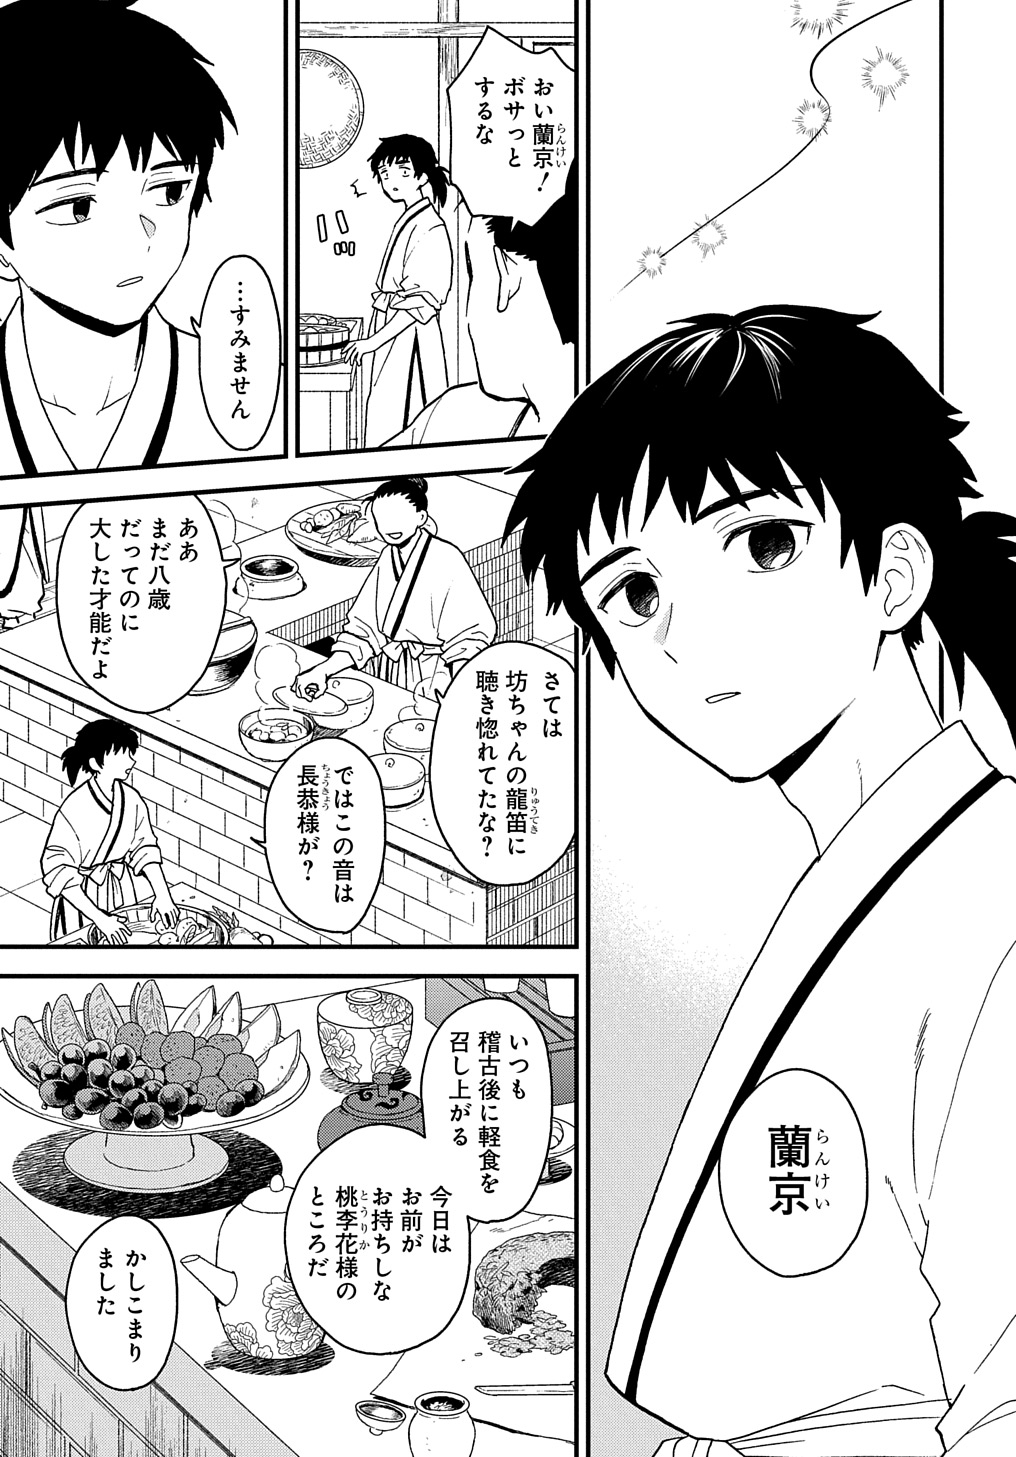 Misasagi no Ou - Chapter 2 - Page 2